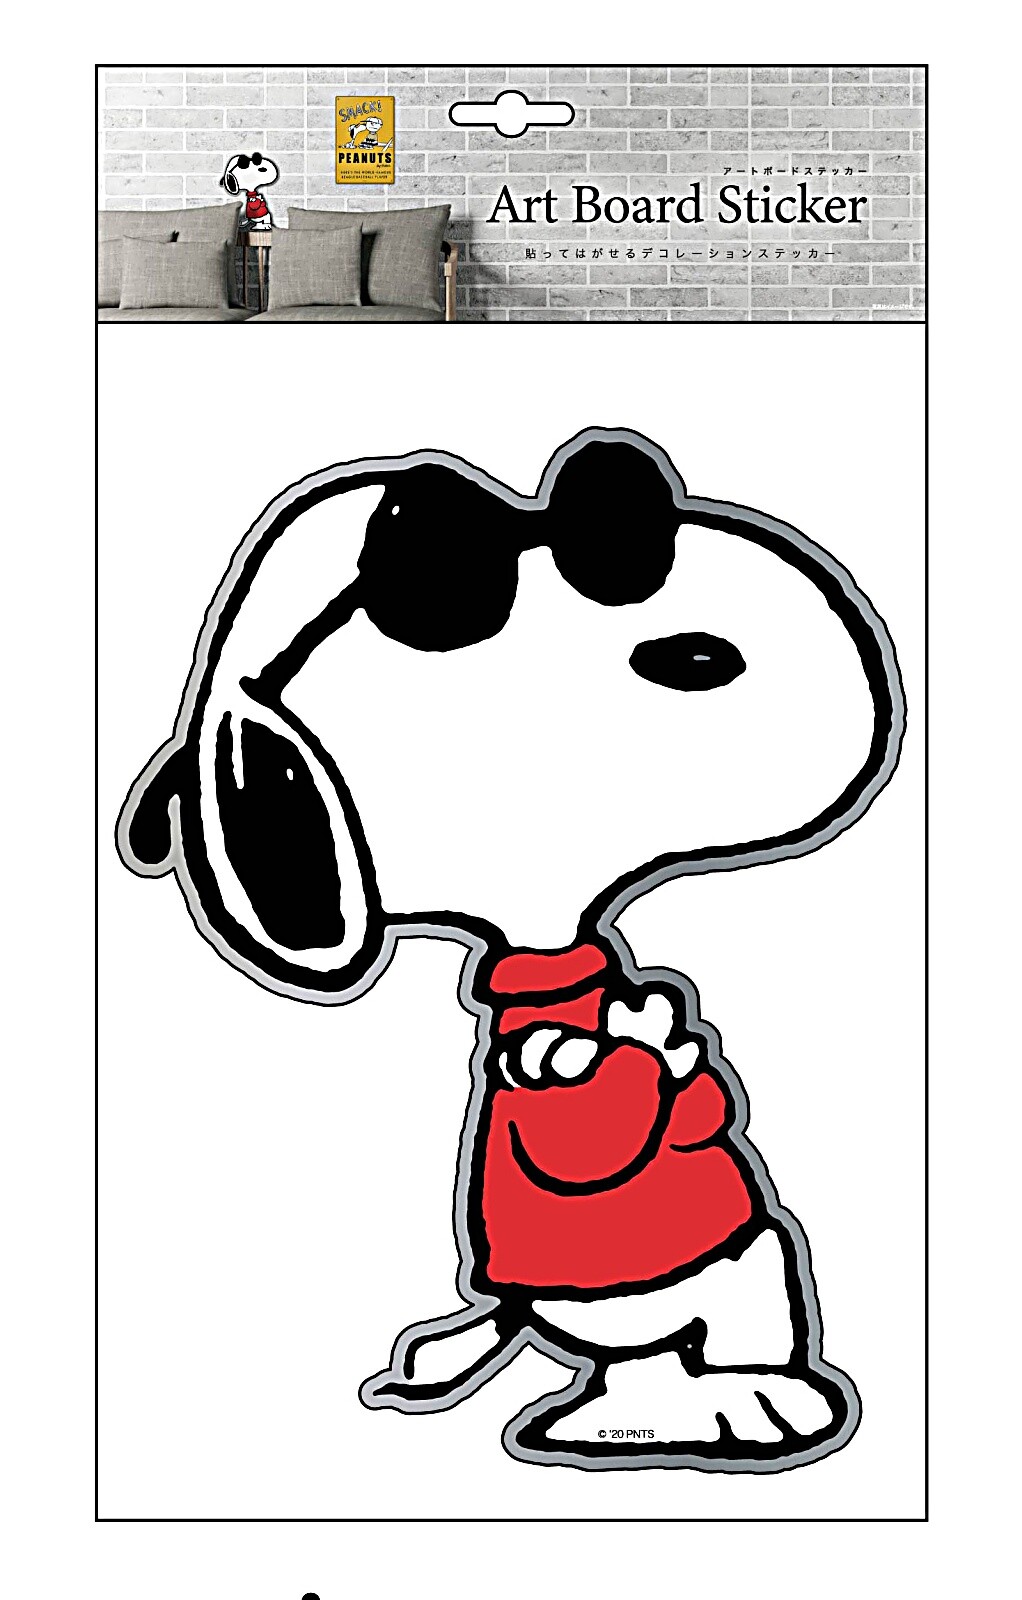 楽天市場 送料無料 スヌーピー Joe Cool ピーナッツ Peanuts Snoopy 貼って剥がせる ぷっくり立体 アートボード ウォールデコ ウォールステッカー Pvc 壁紙 W385 H225 D5mm Pwd28 Decoste